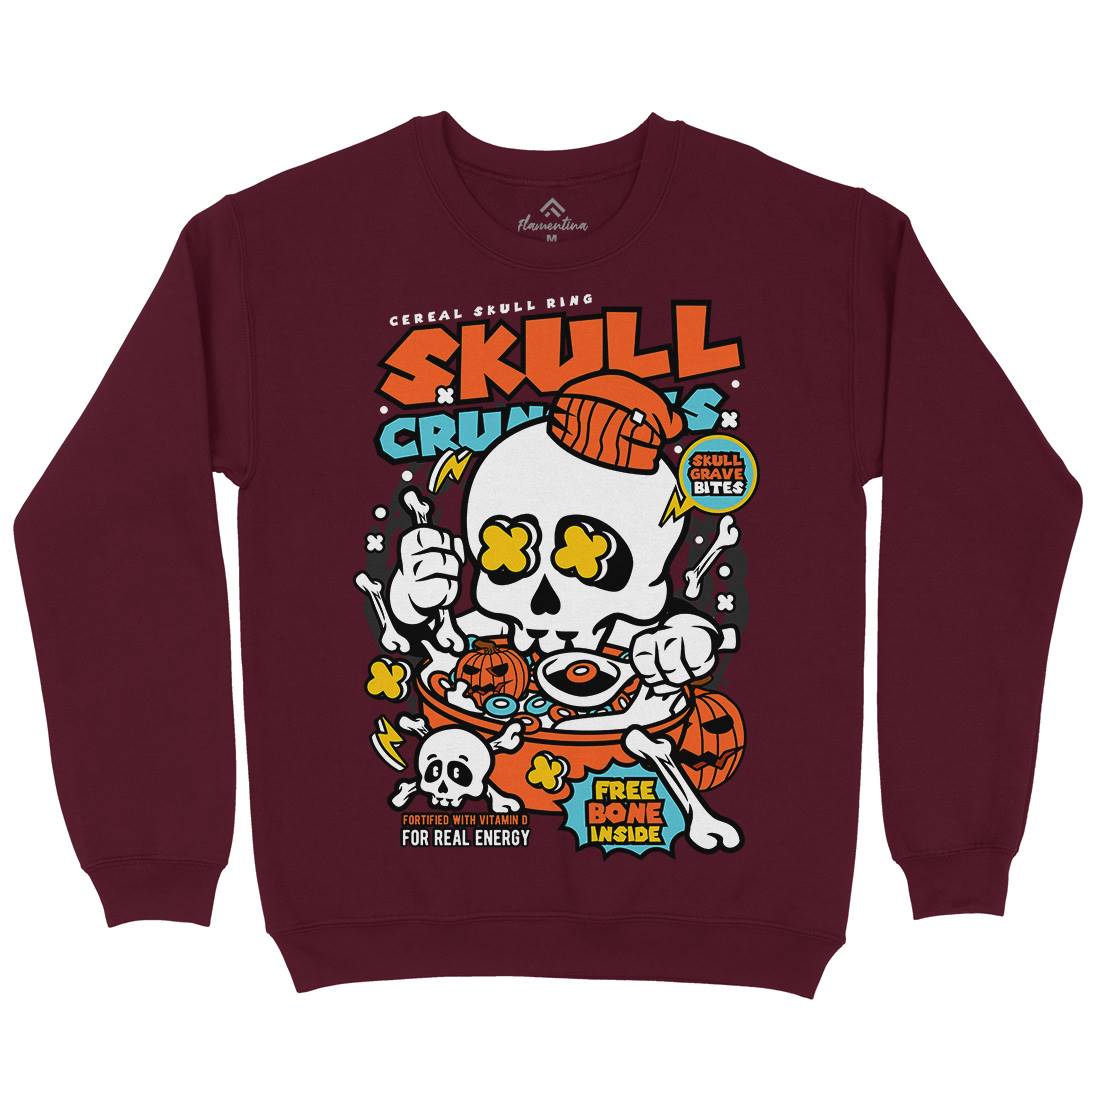 Skull Crunchies Kids Crew Neck Sweatshirt Food C656